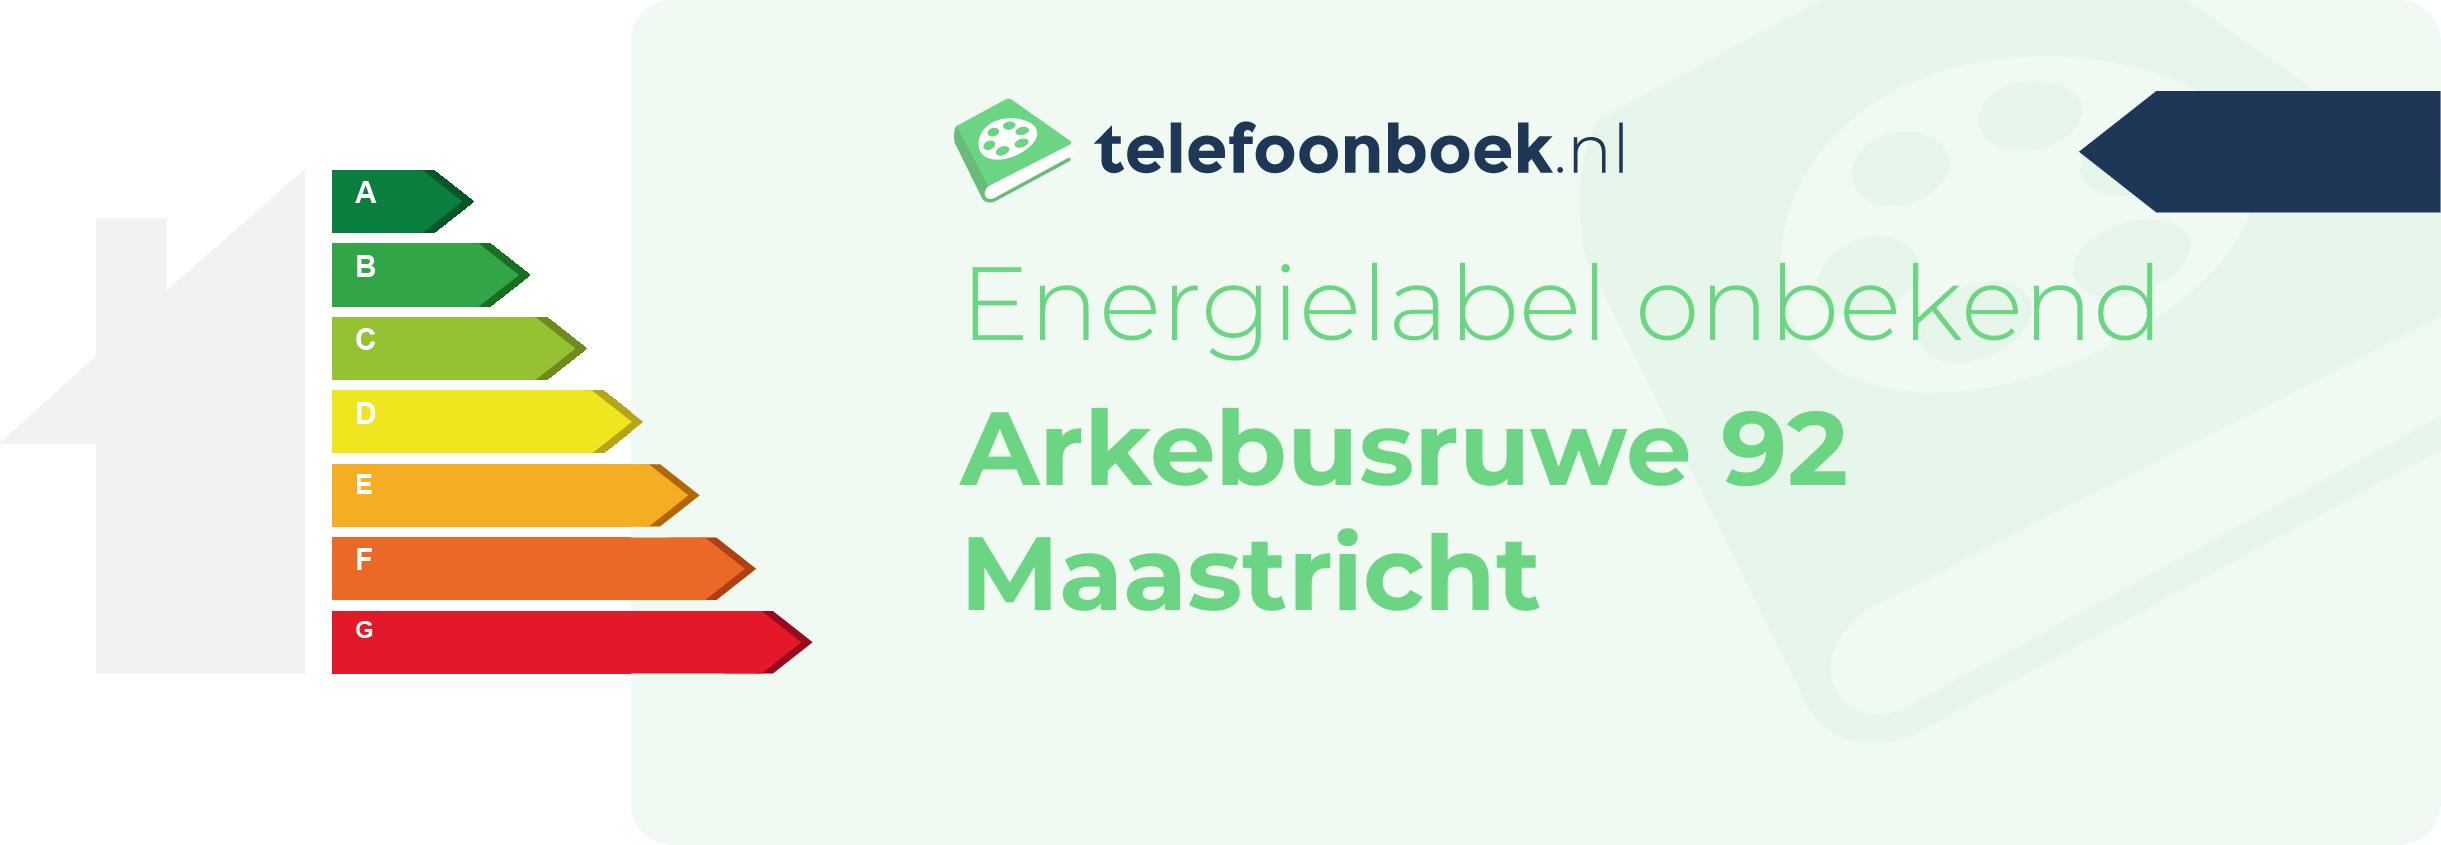 Energielabel Arkebusruwe 92 Maastricht